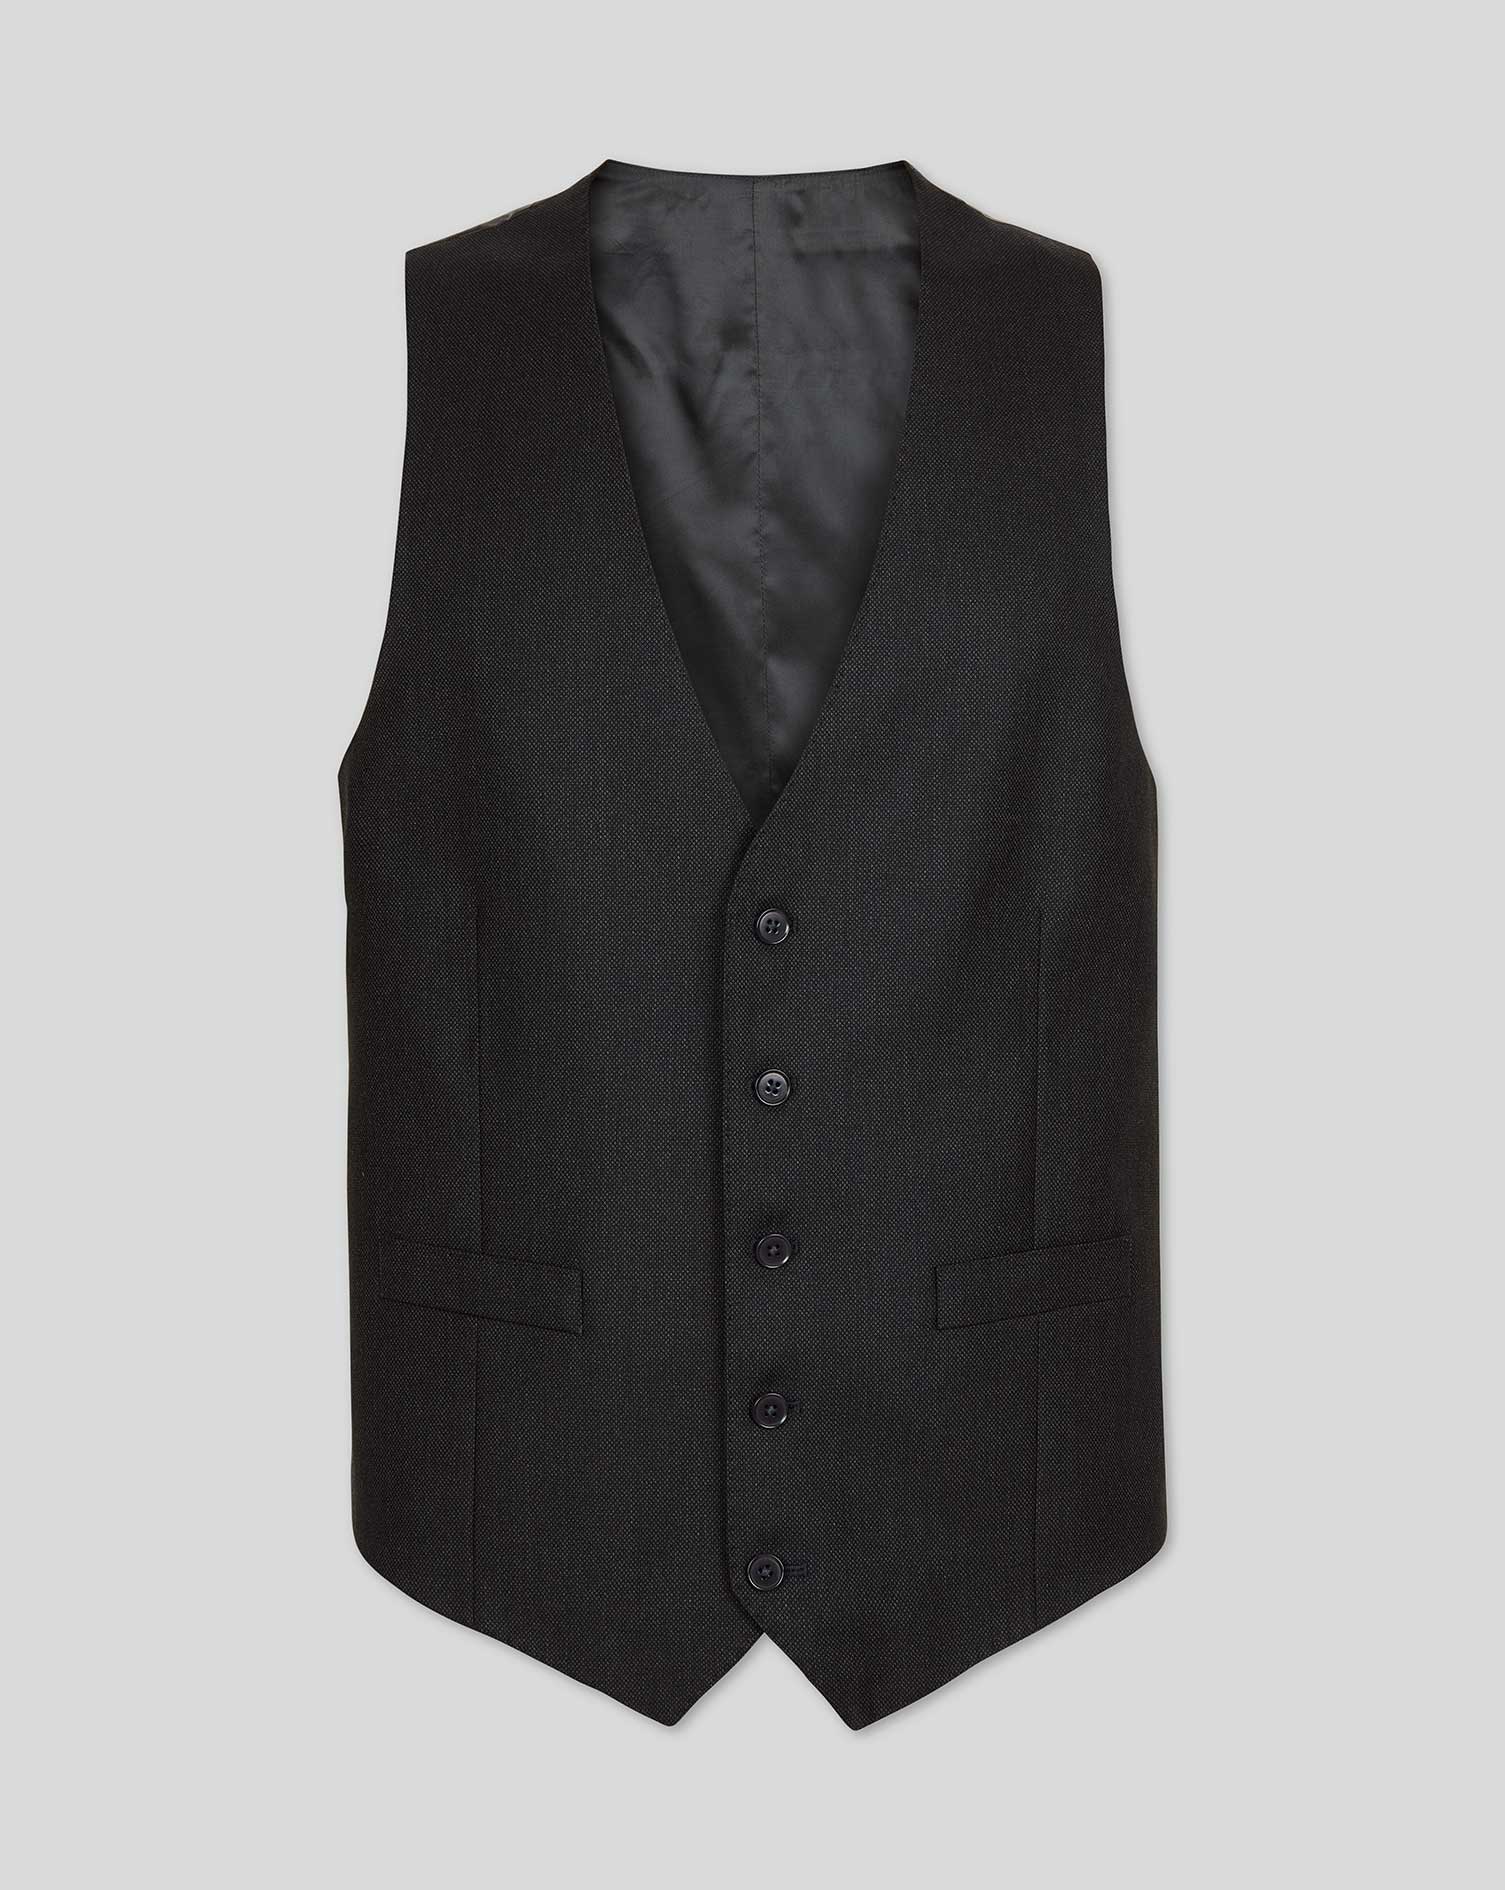 Men's Charles Tyrwhitt Birdseye Travel Suit Waistcoat - Charcoal Grey Size w40 Wool
